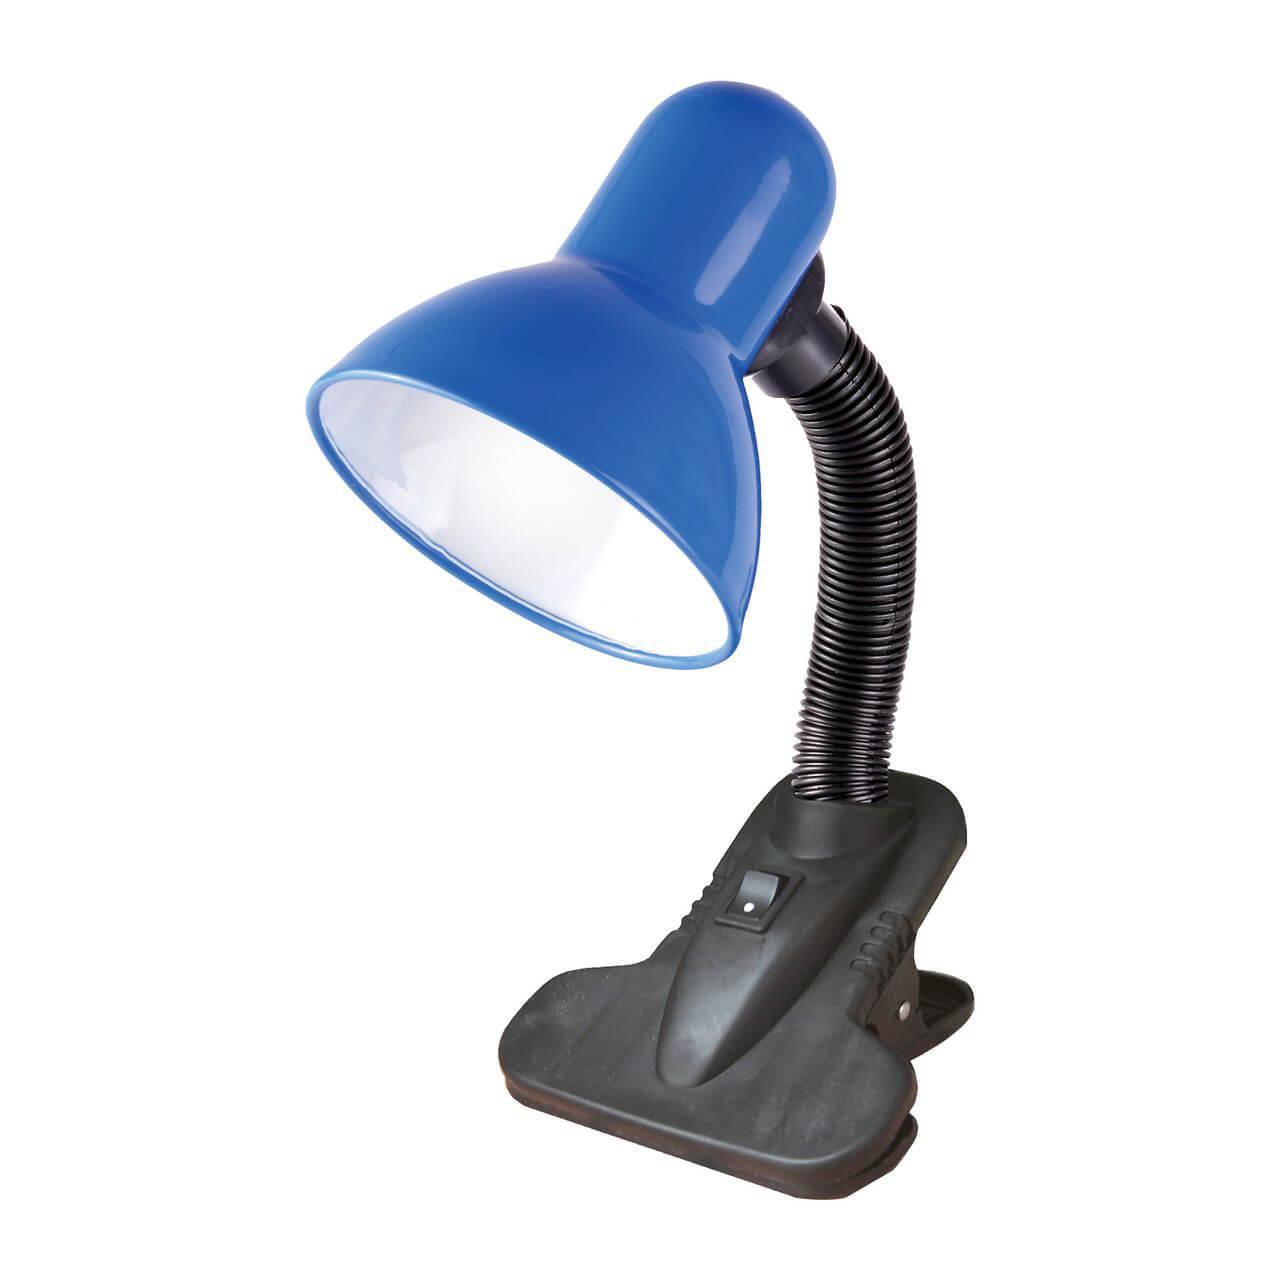 Настольная лампа Uniel TLI-206 Blue E27 02462 настольная лампа uniel tli 206 orange e27 02463